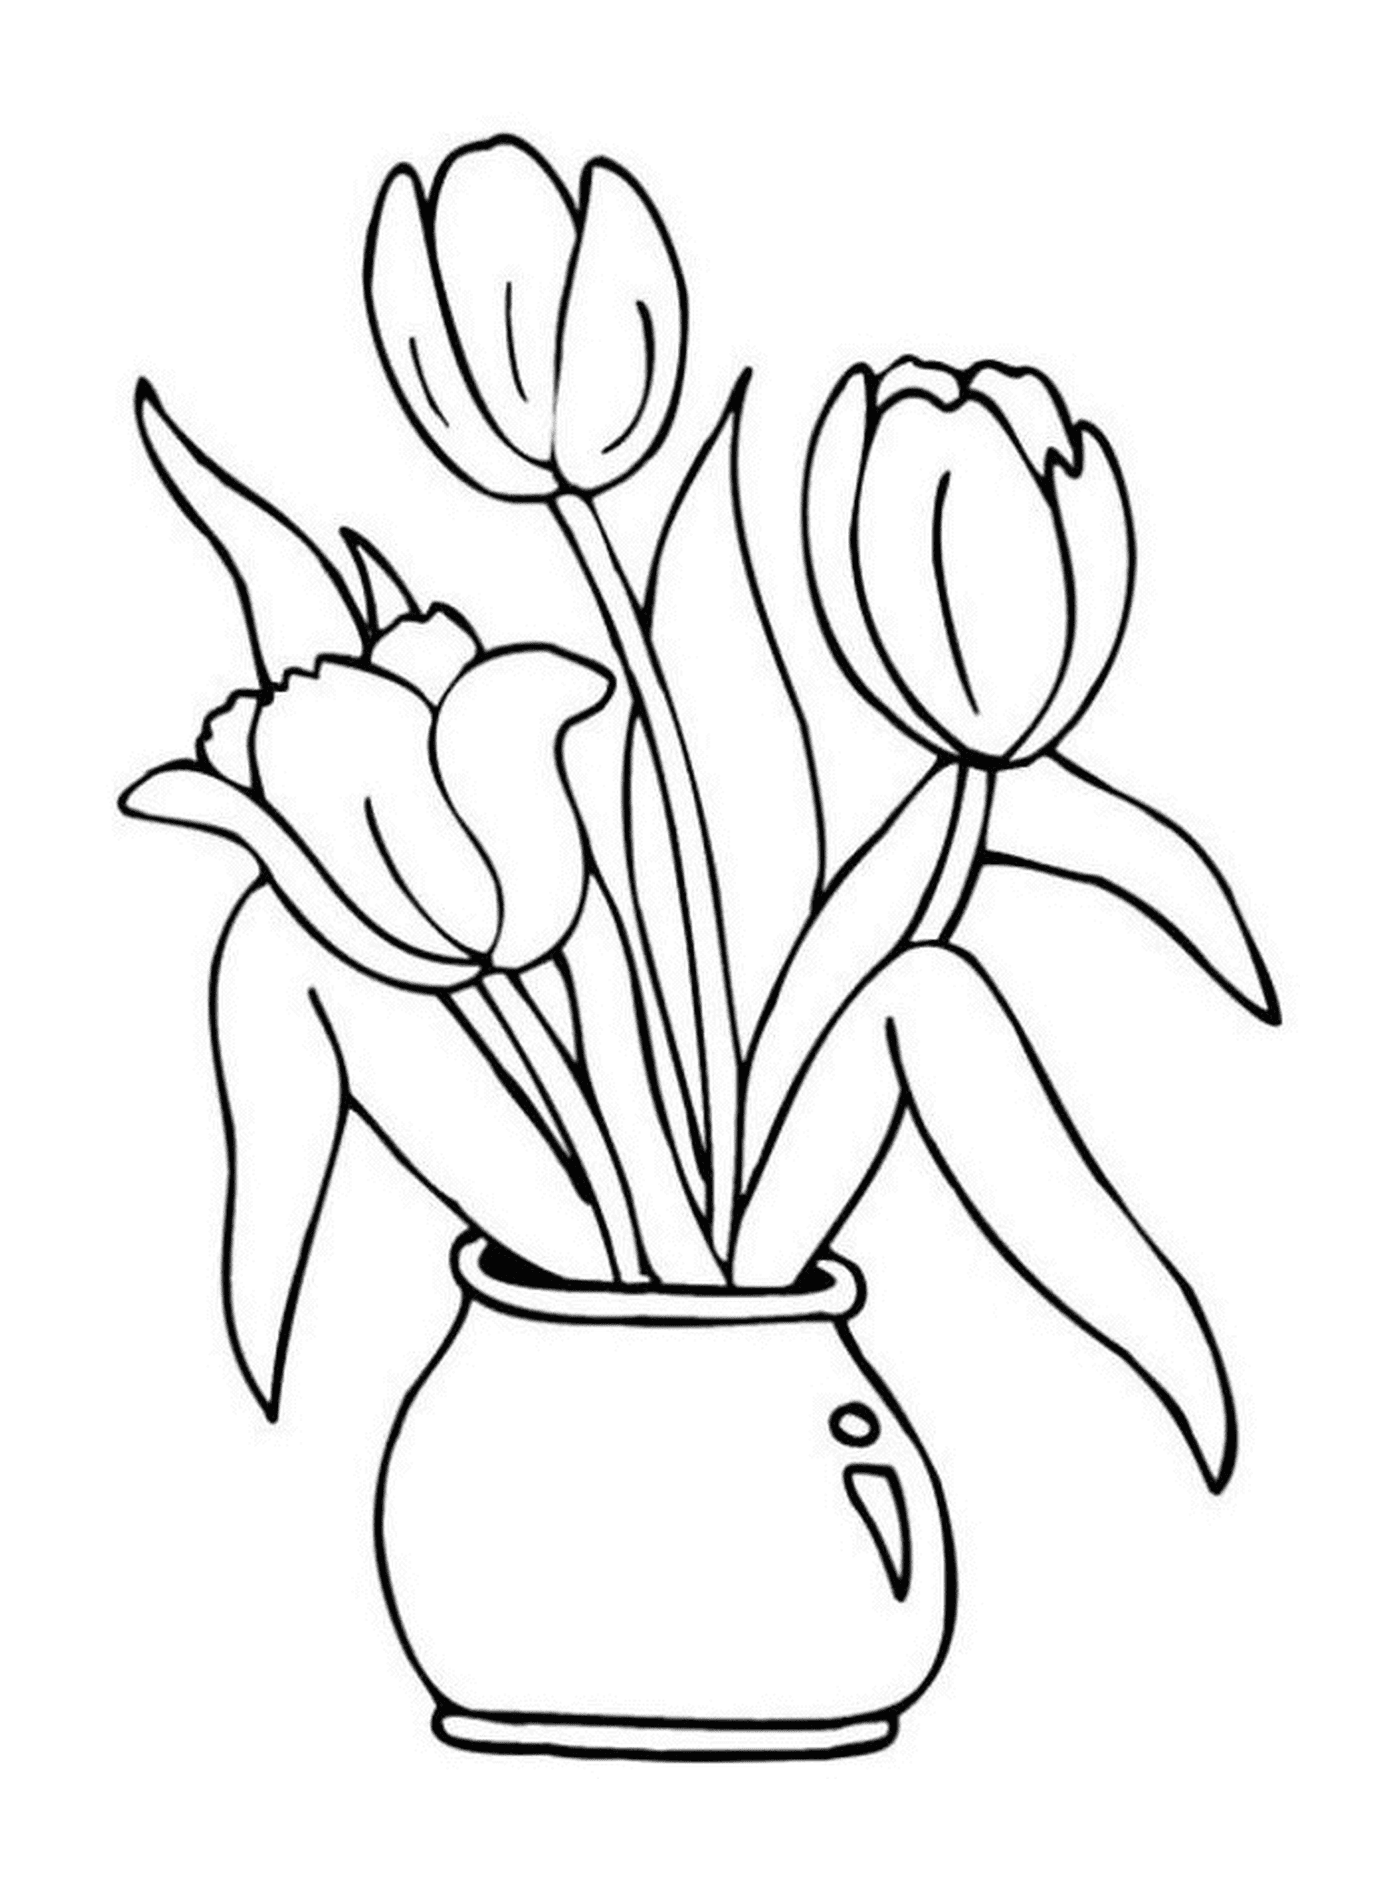  Três tulipas coloridas em um vaso 